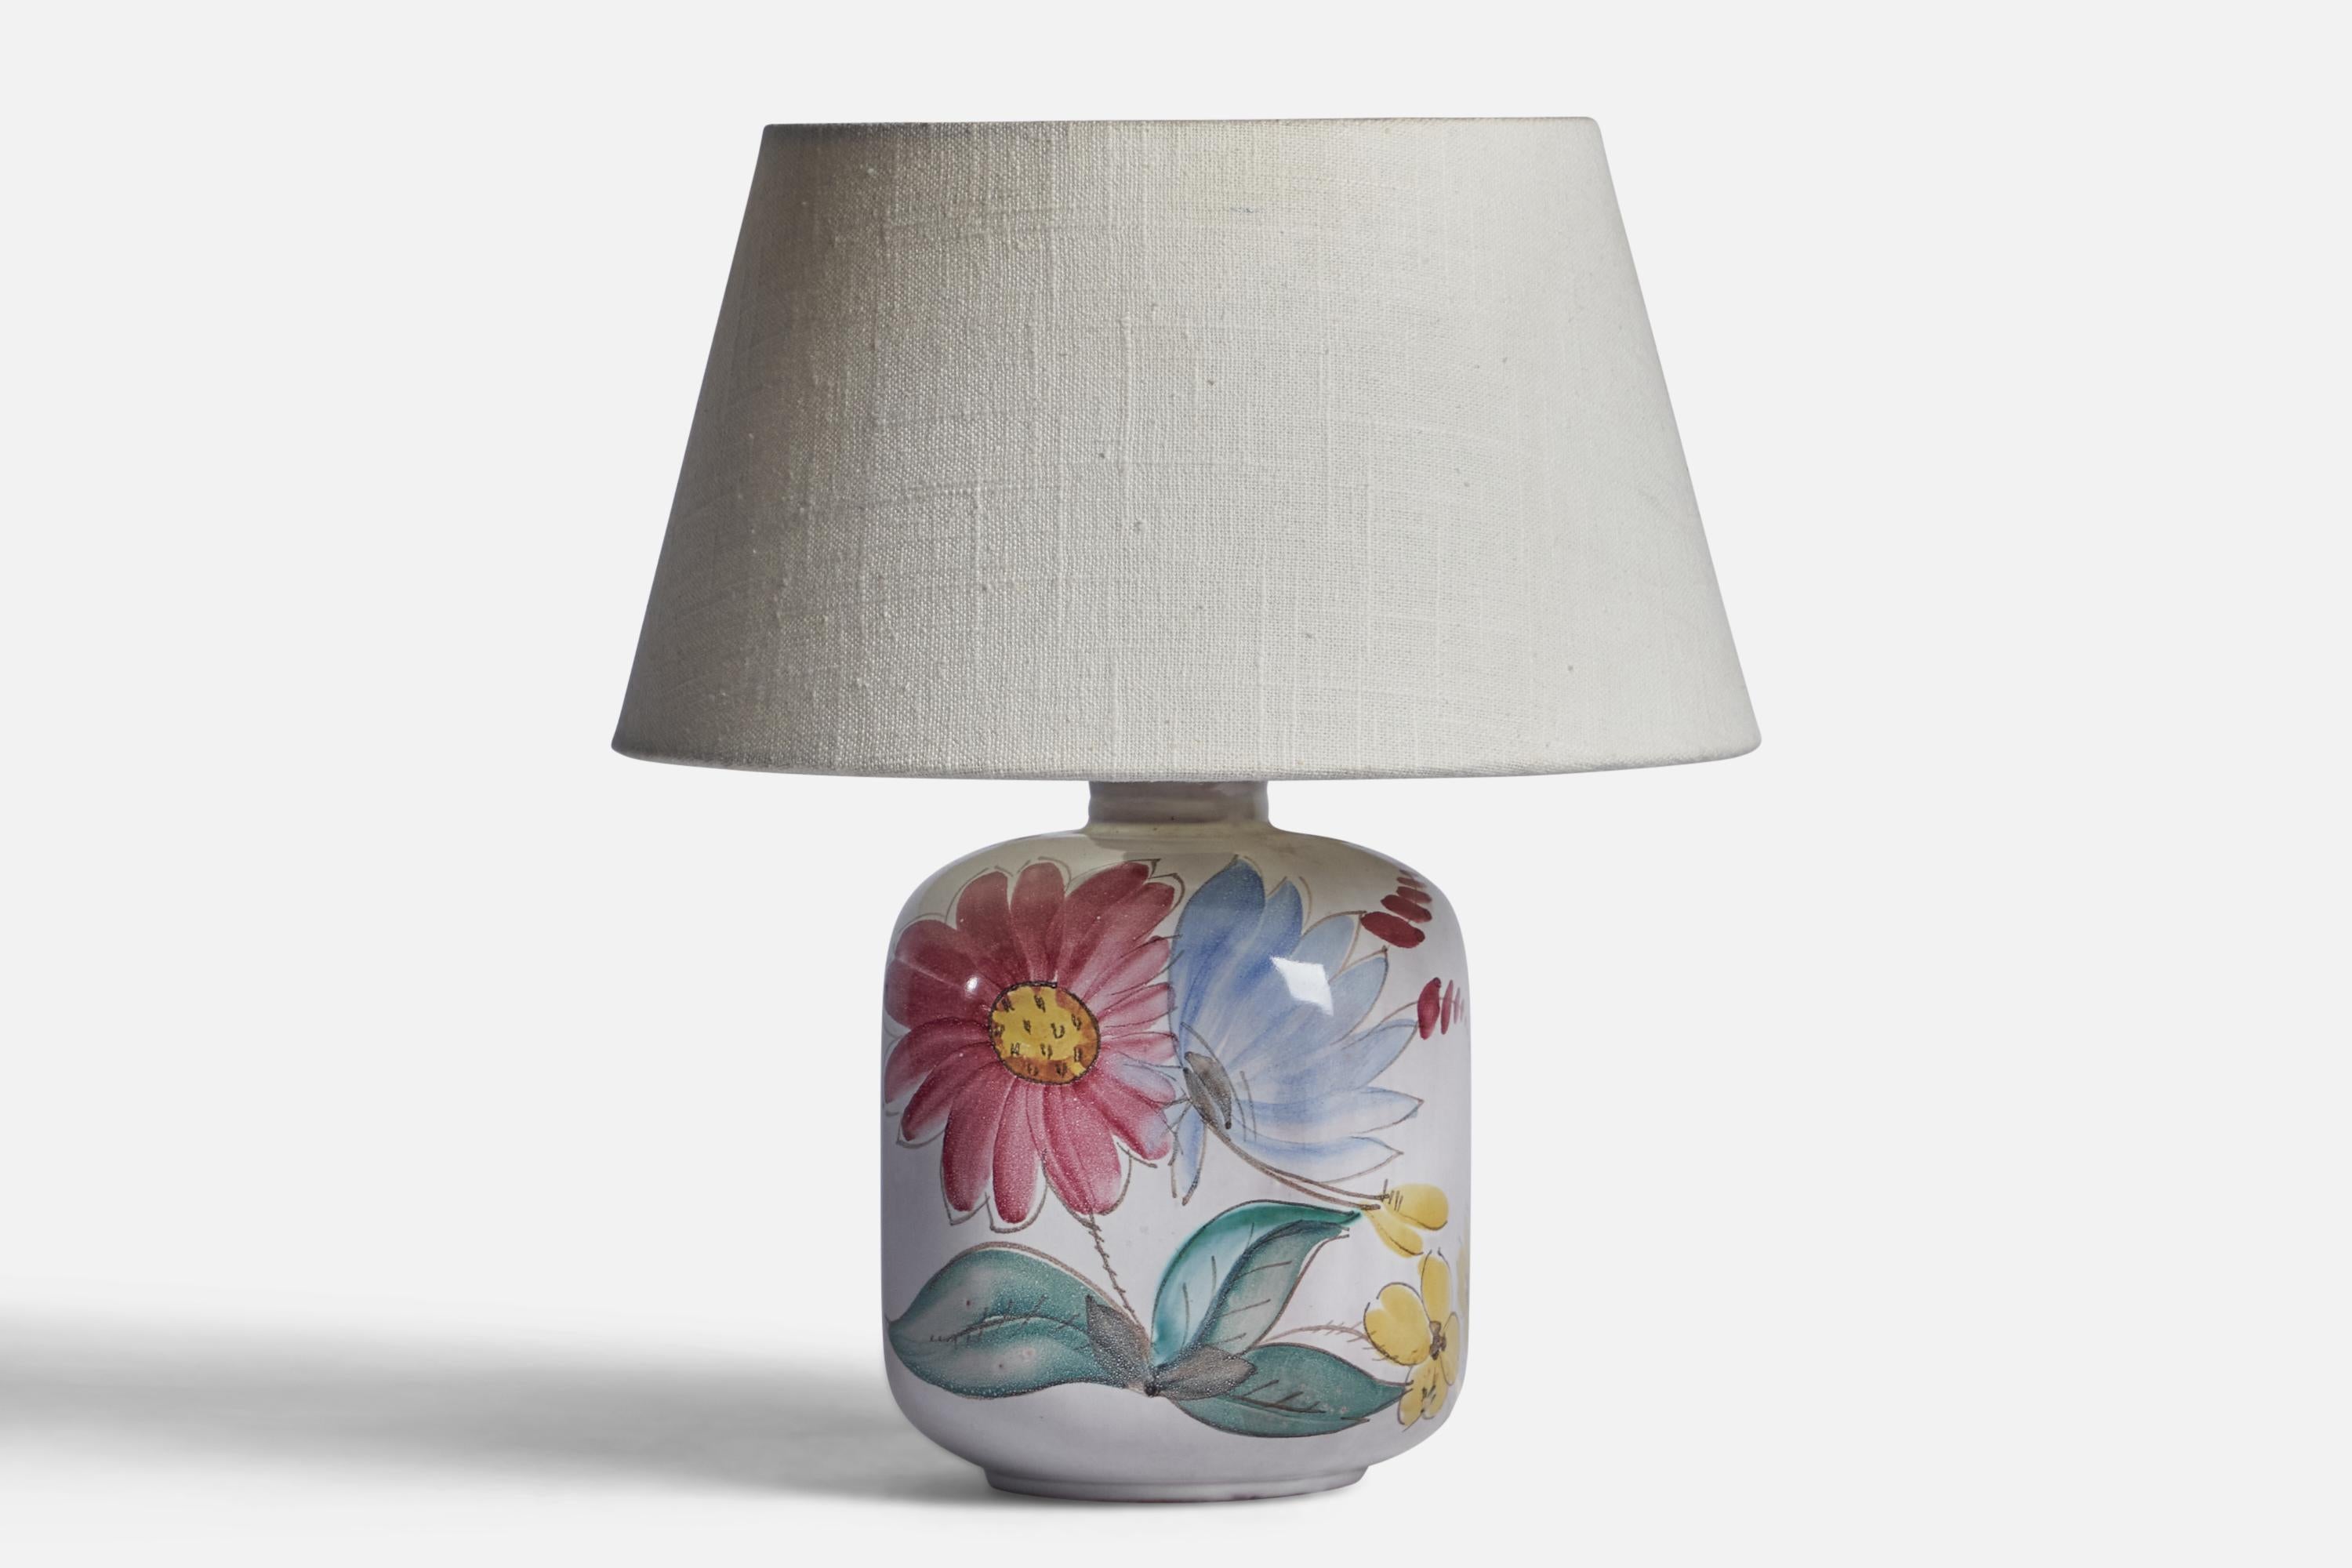 Lampe de table en grès émaillé blanc et peint à la main produite par Arabia, Finlande, vers les années 1940.

Dimensions de la lampe (pouces) : 9.1